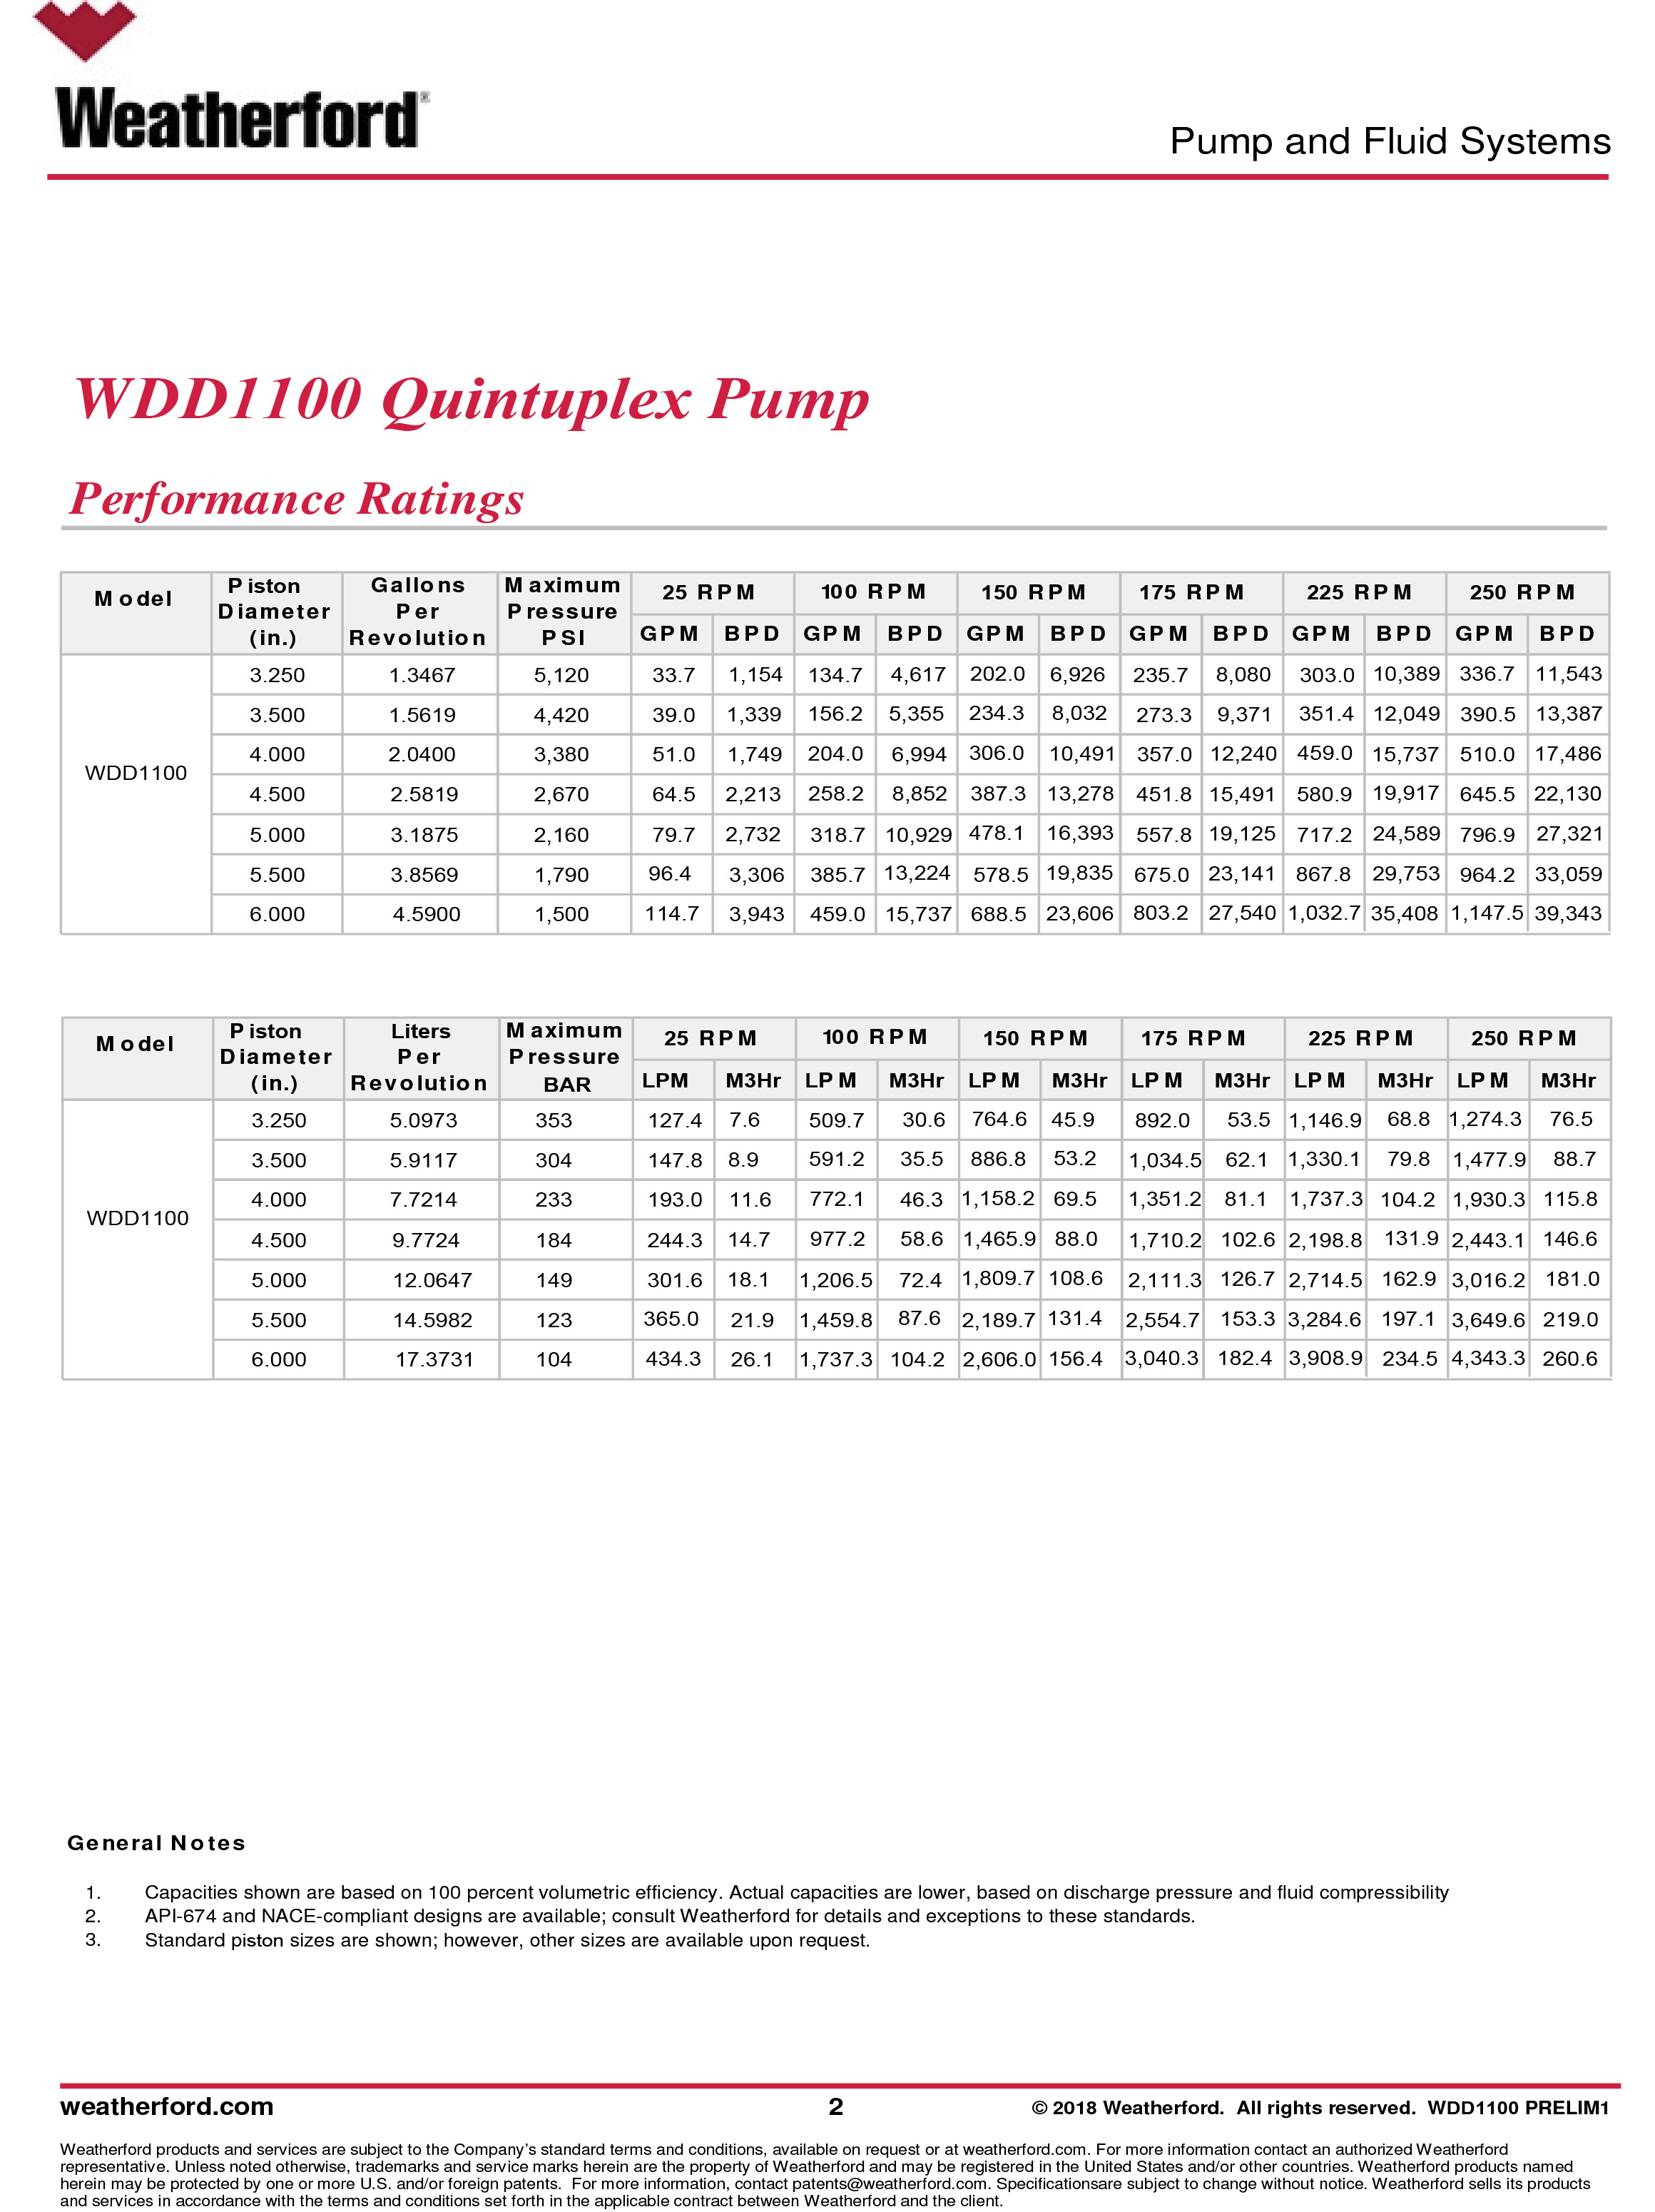 wdd1100-quintuplex-piston-pump-2.jpg